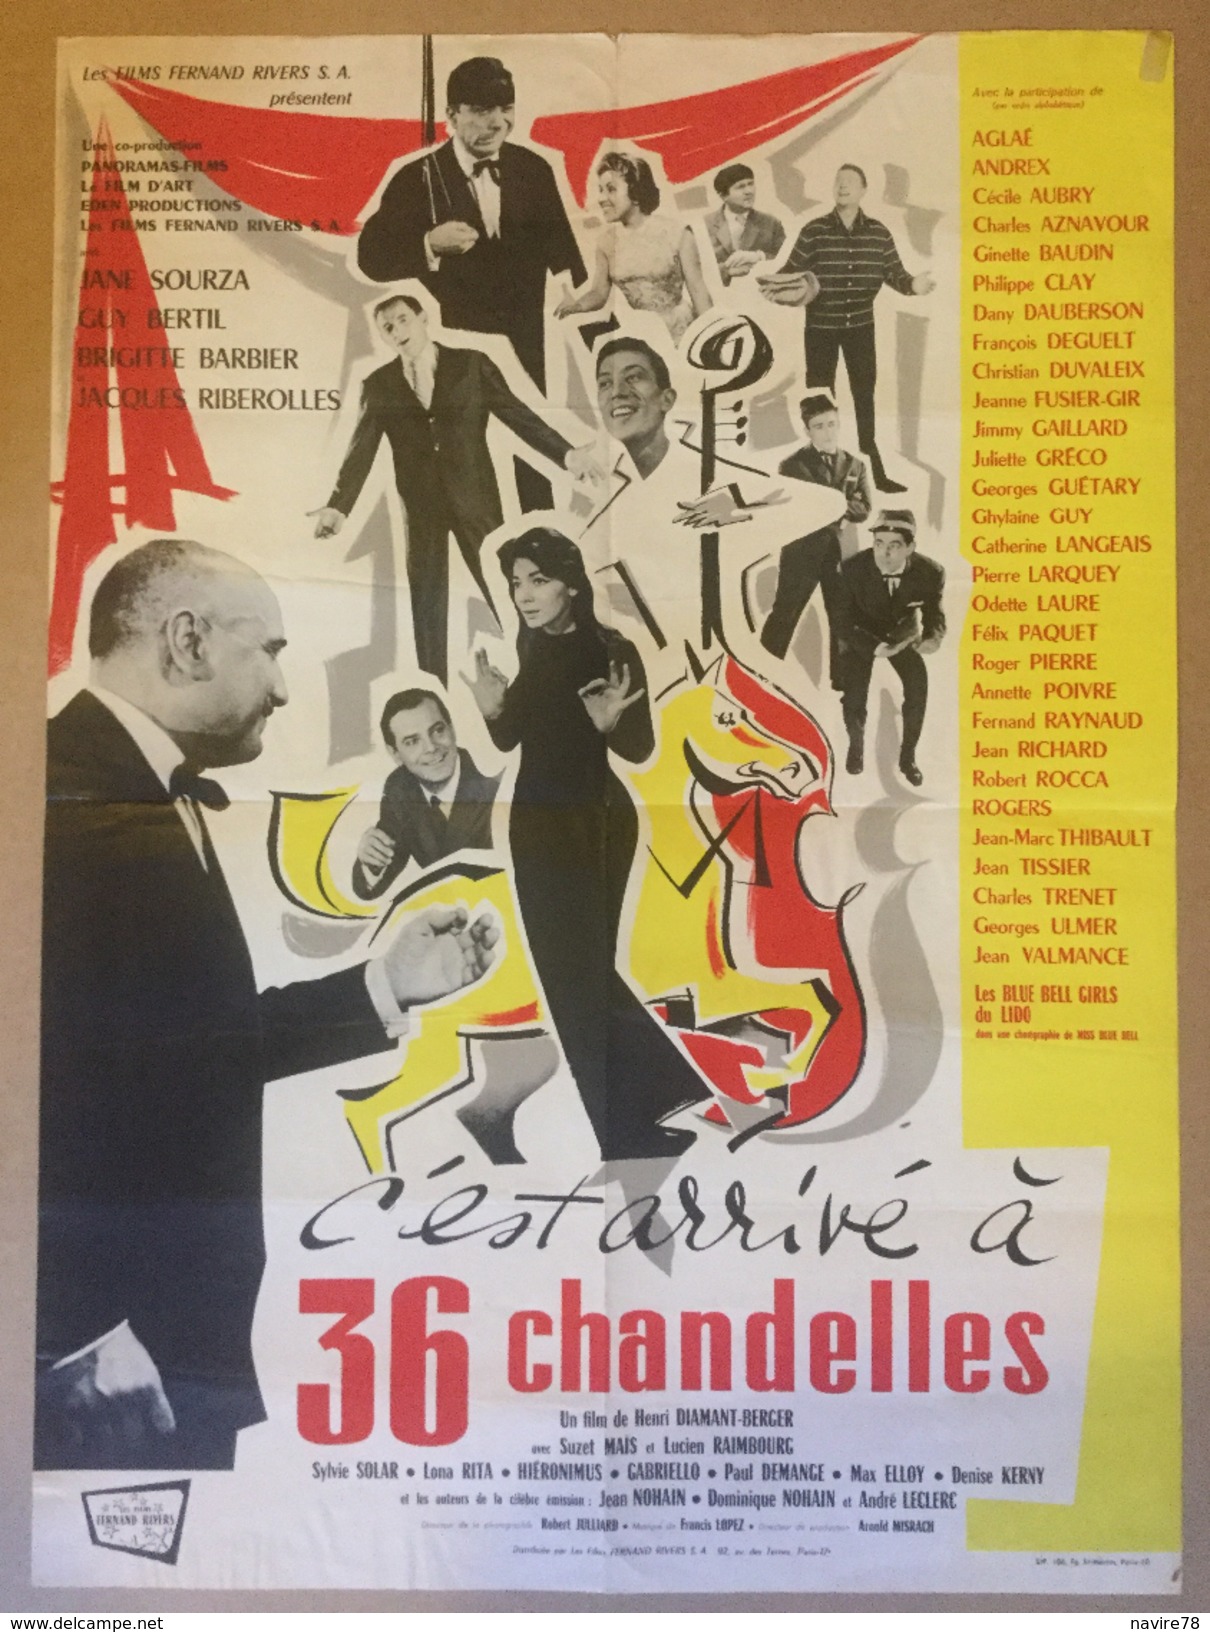 Affiche Cinéma Originale Du Film C'EST ARRIVE A 36 CHANDELLES 1957 De HENRI DIAMANT-BERGER Avec ANNE SOURZA GUY BERTIL - Affiches & Posters